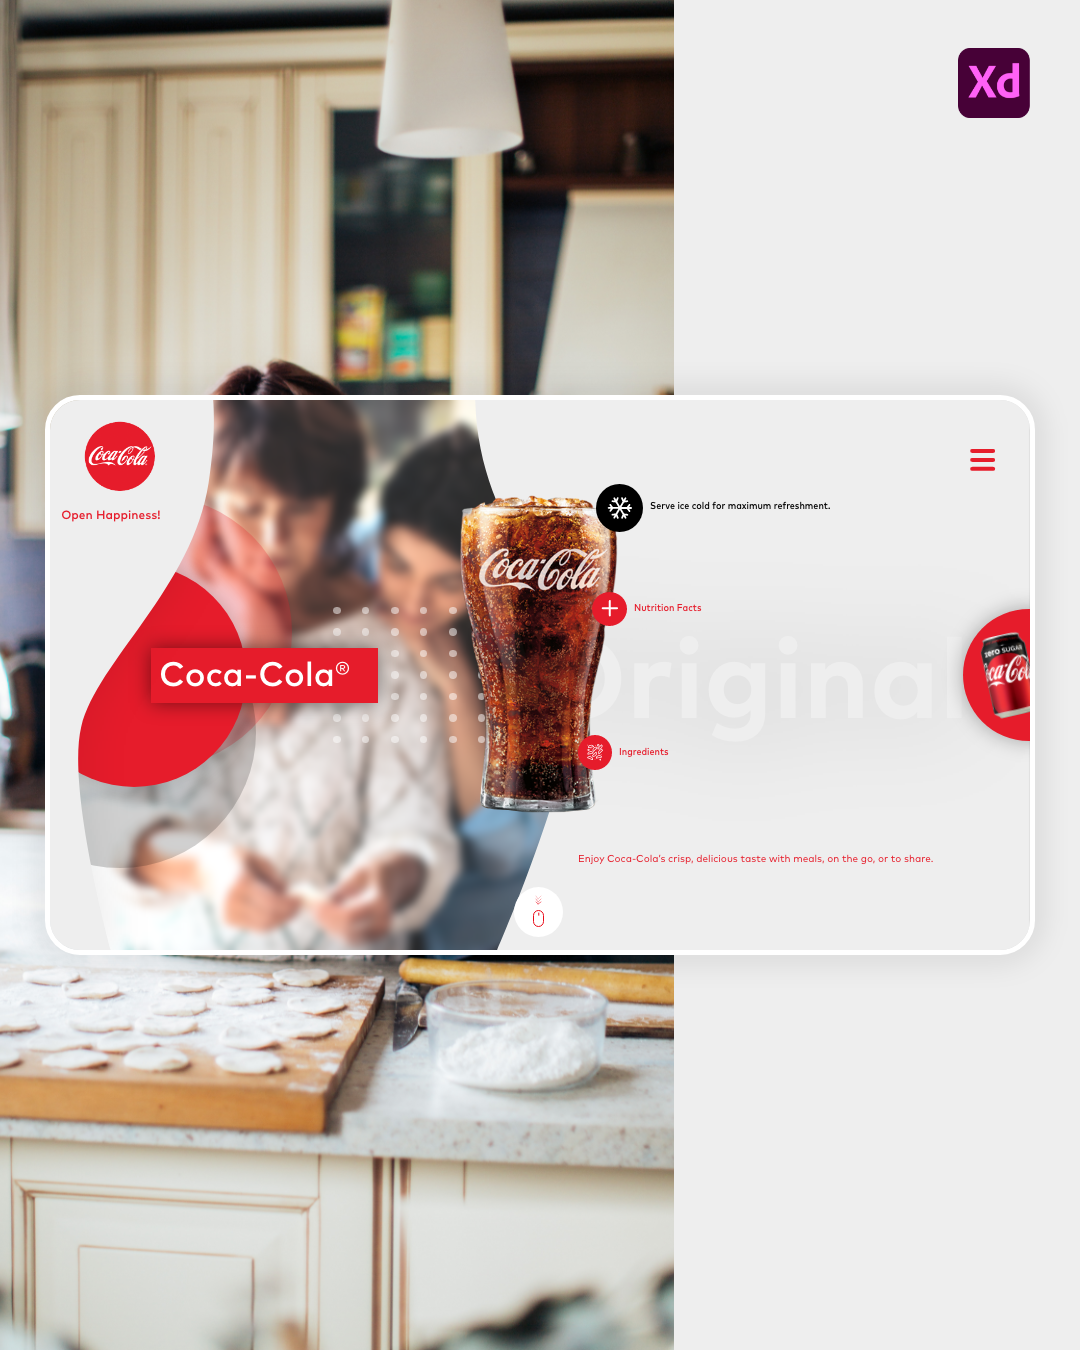 Adobe XD Coca Cola conceito inteface UI designer UX Designer Web wordpress